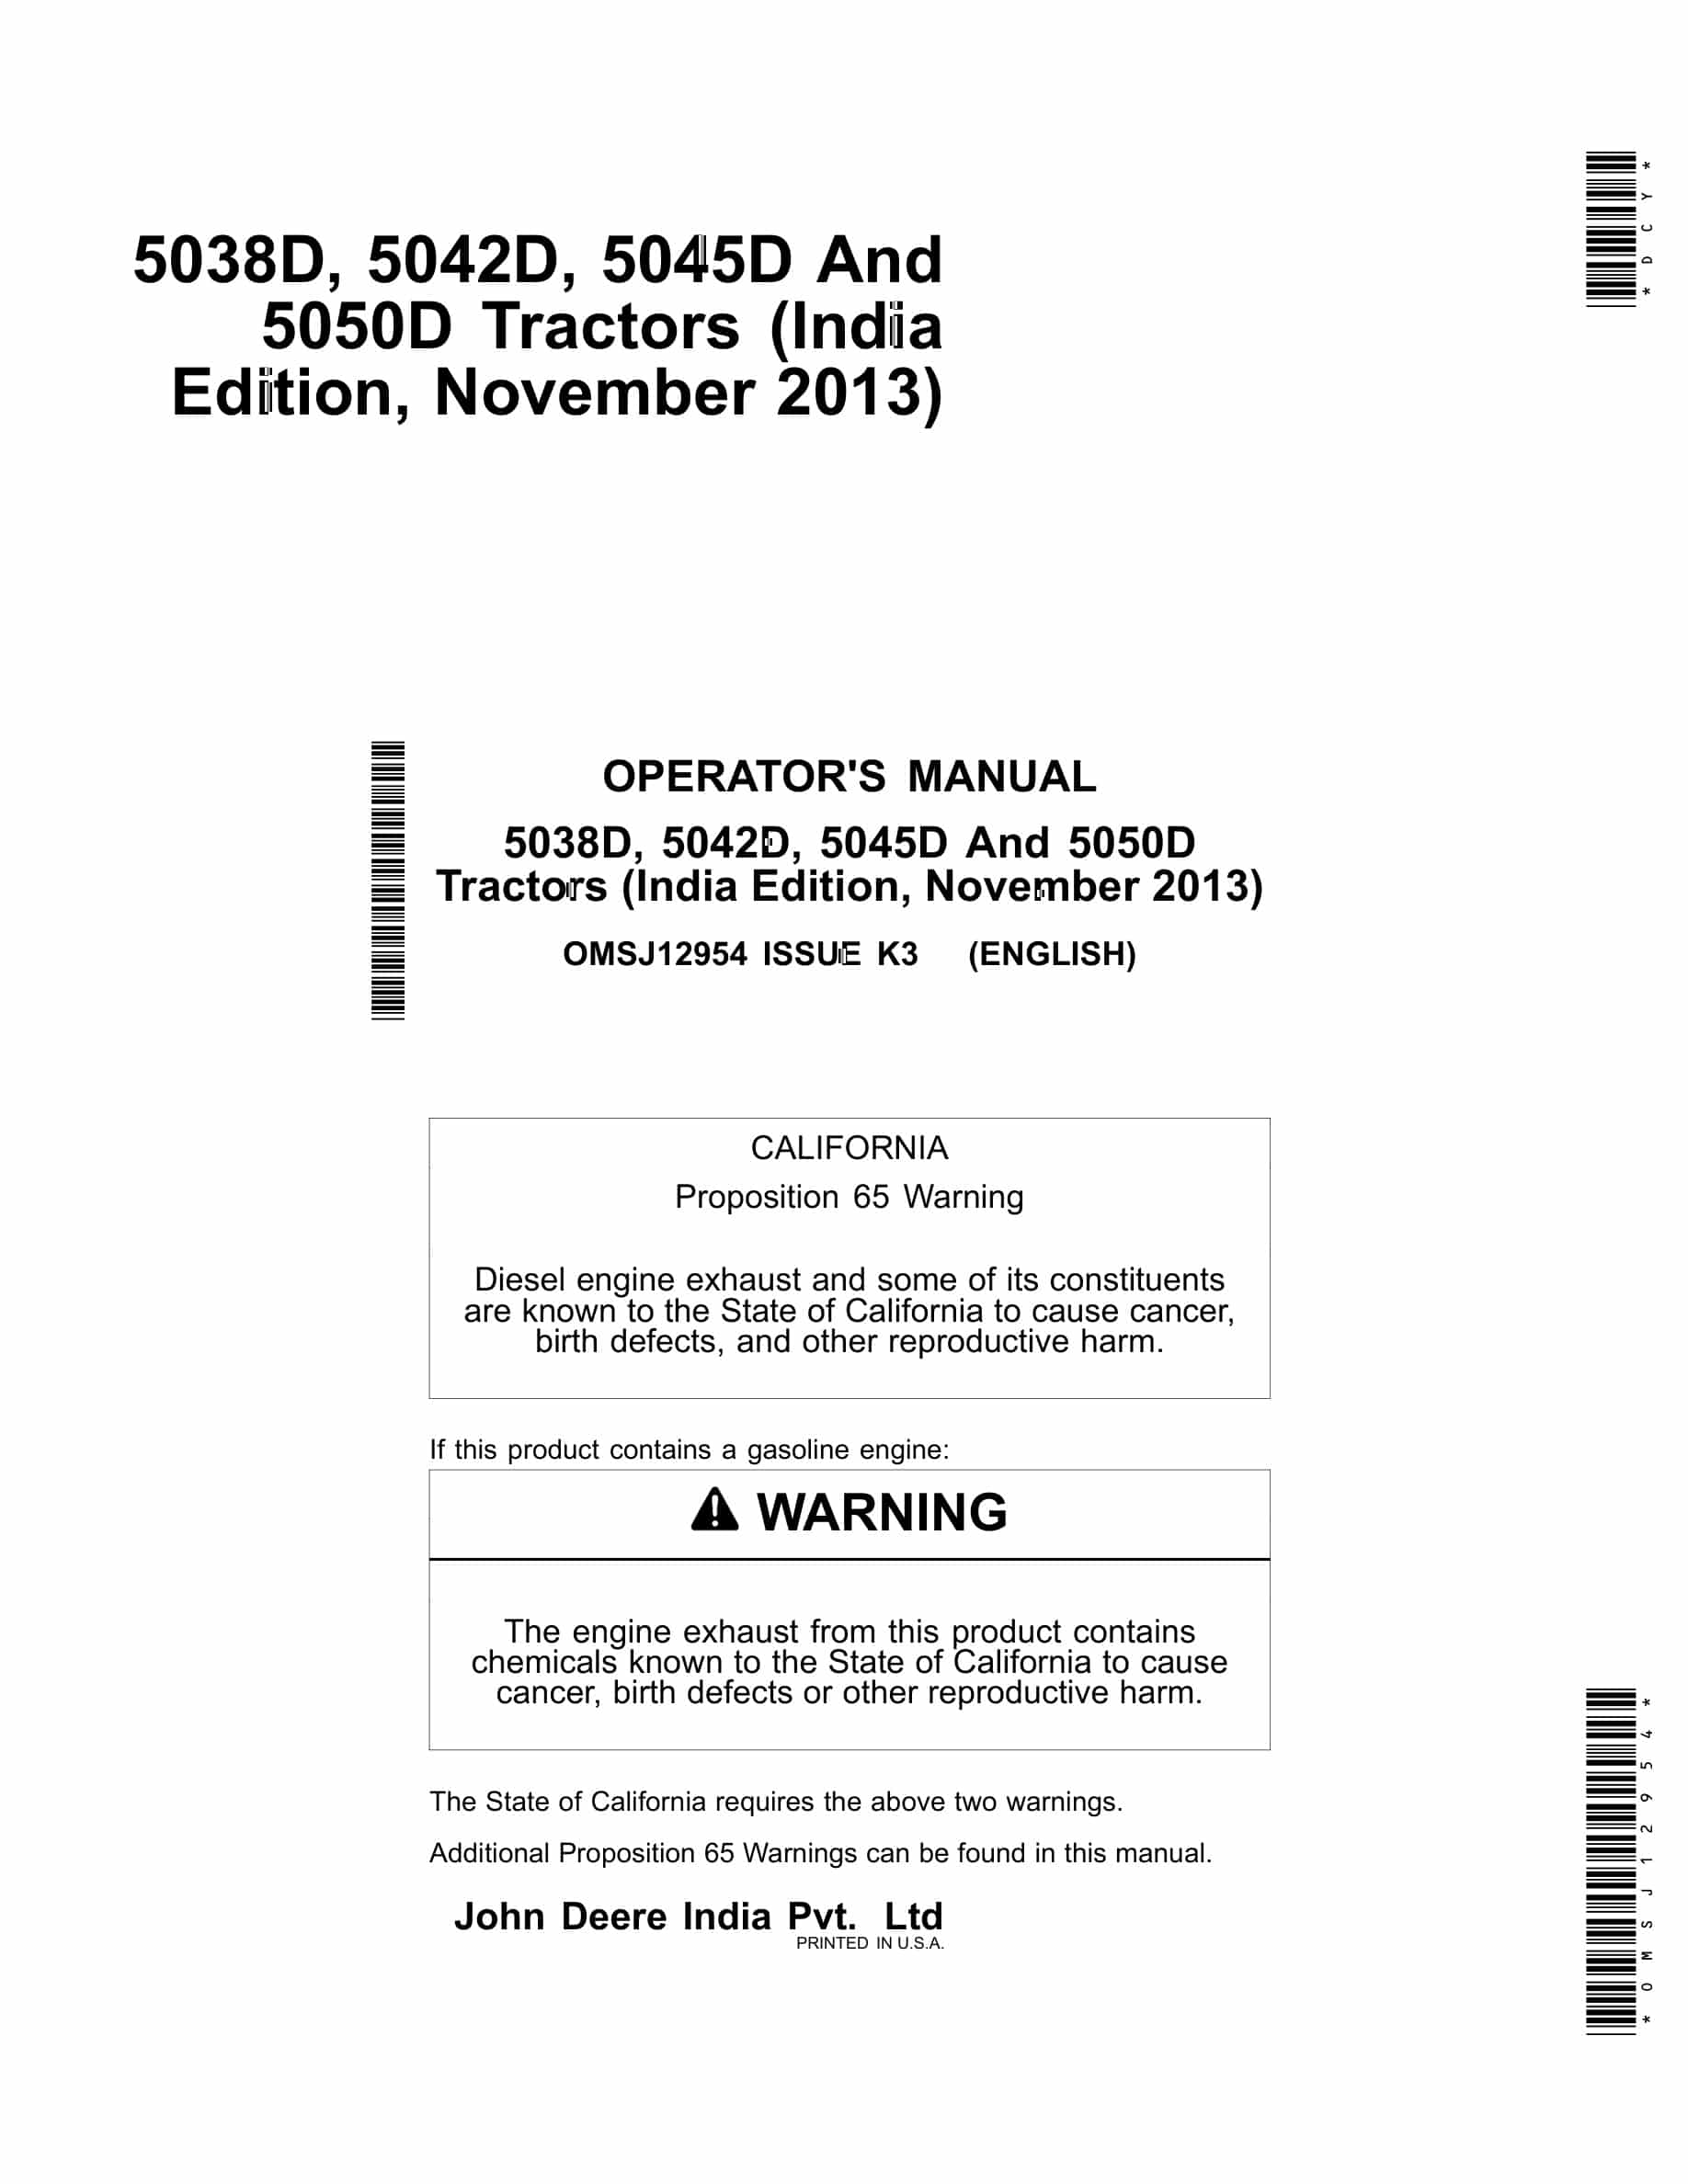 John Deere 5038d, 5042d, 5045d And 5050d Tractors Operator Manuals OMSJ12954-1